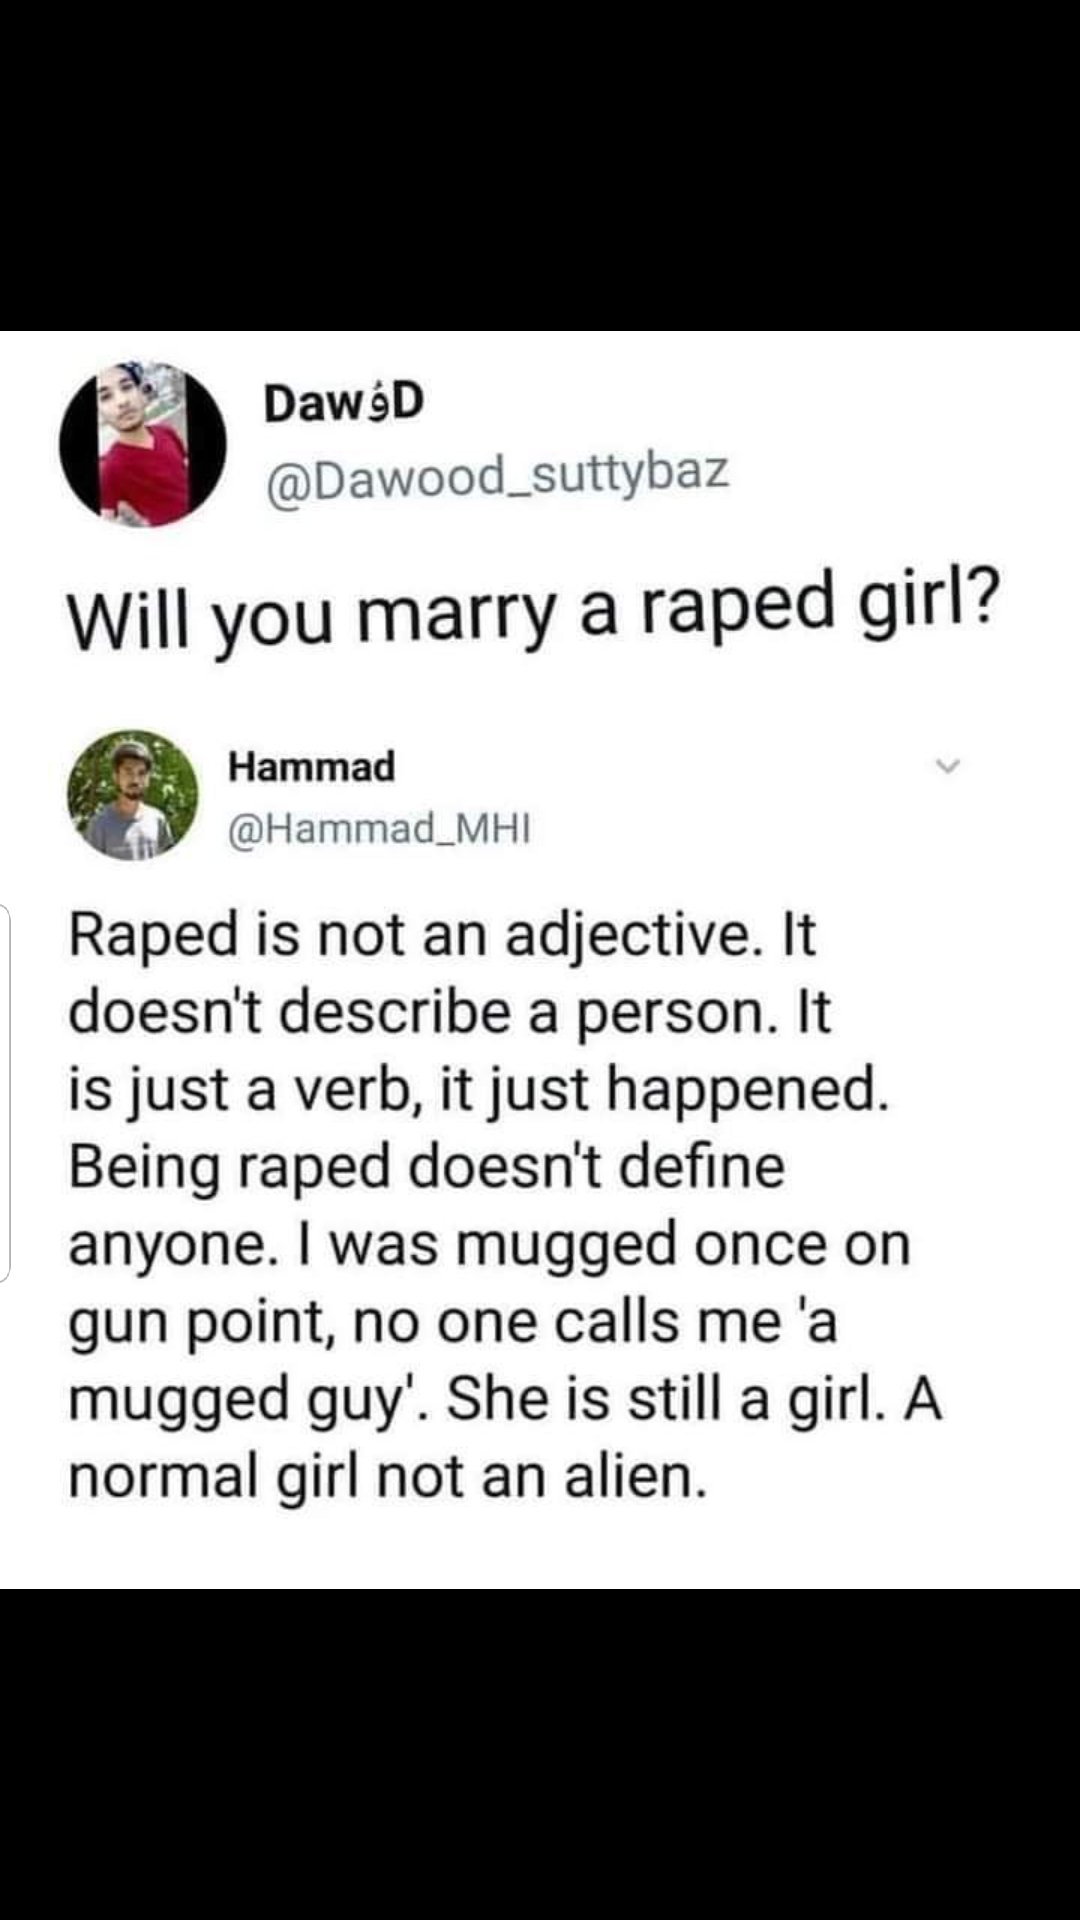 rape-is-not-an-adjective-scrolller